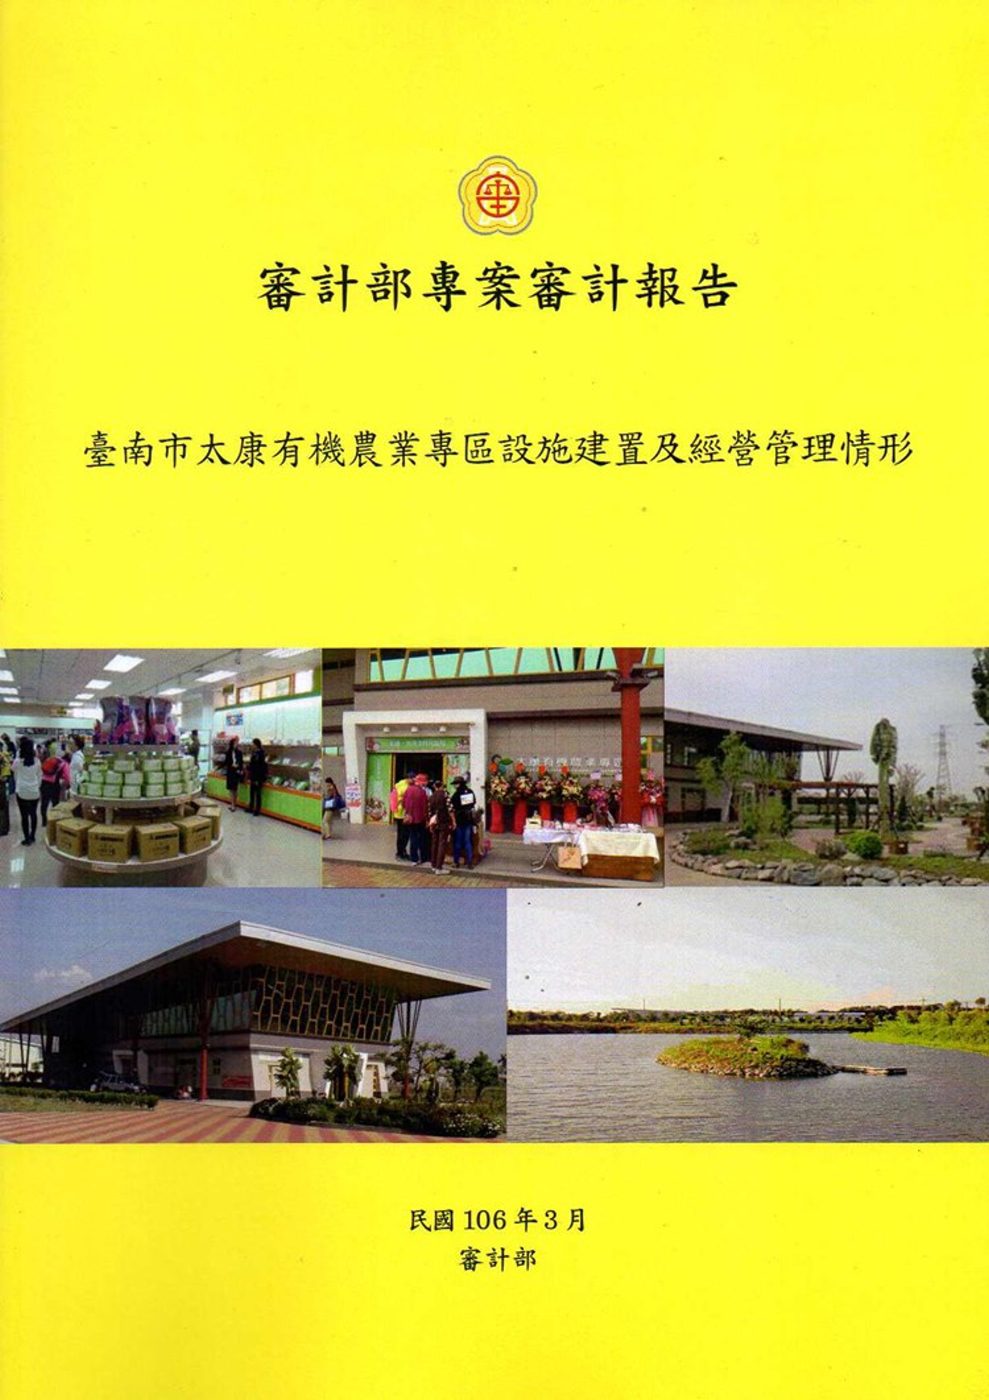 臺南市太康有機農業專區設施建置及經營管理情形